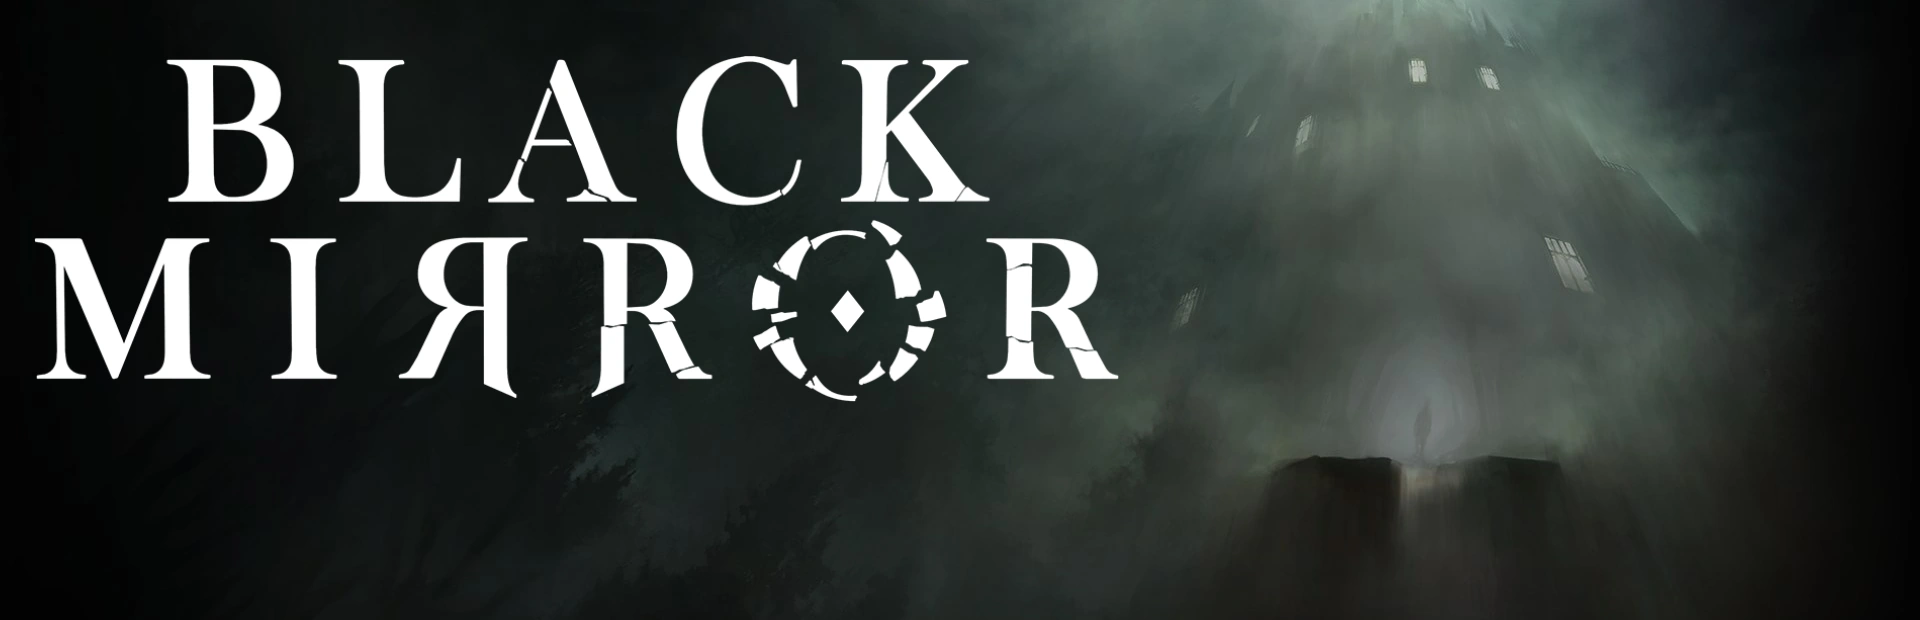 دانلود بازی Black Mirror برای کامپیوتر | گیمباتو